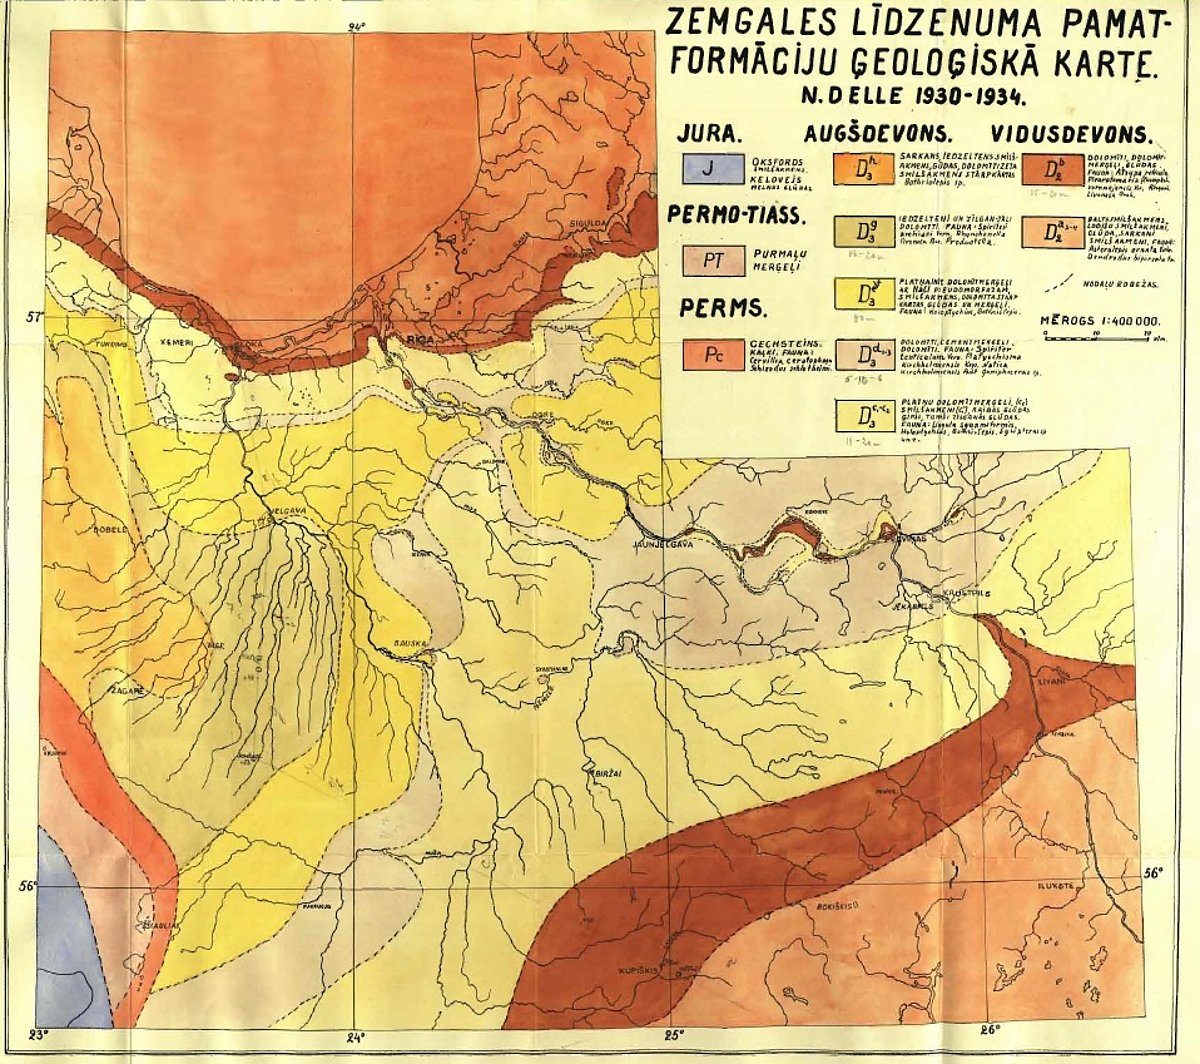 N. Delles disertācijā “Devona nogulumi Zemgales līdzenumā” (1934. gads) publicētā karte “Zemgales līdzenuma pamatformāciju ģeoloģiskā karte” (190.lpp).